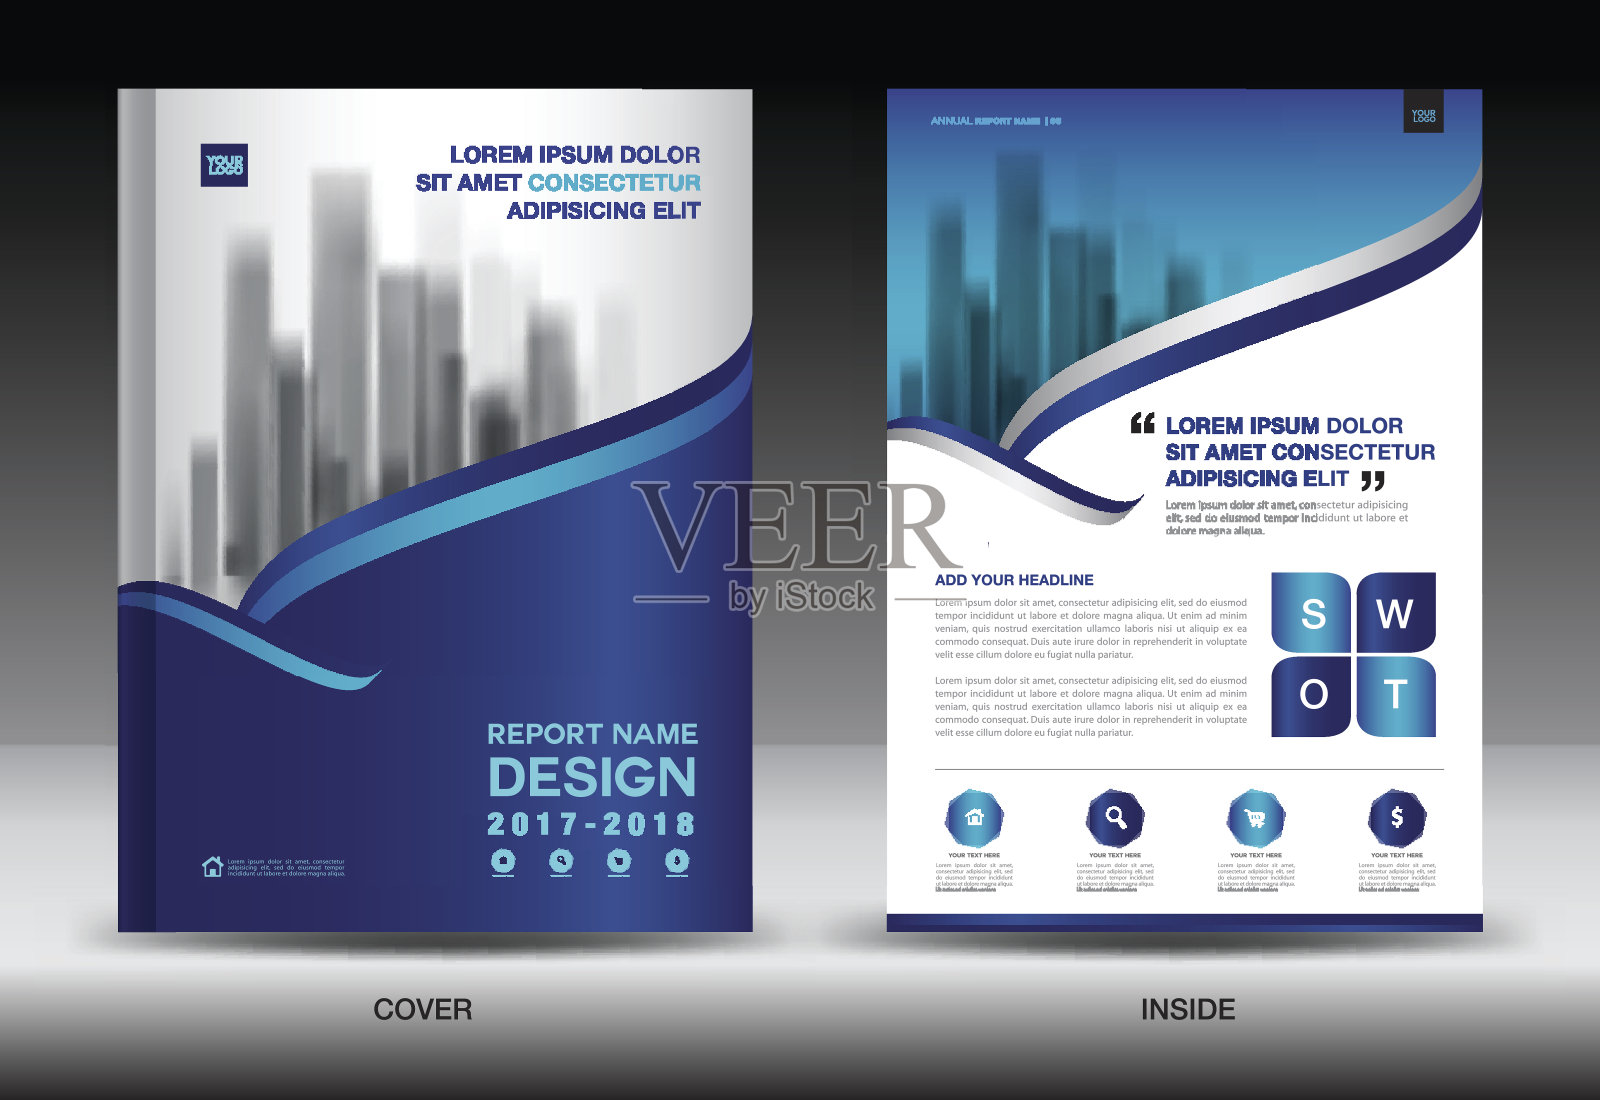 年度报告封面，商业小册子传单模板，蓝色封面设计，书籍封面，杂志，广告，信息图向量商业传单模板，广告，信息图向量设计模板素材